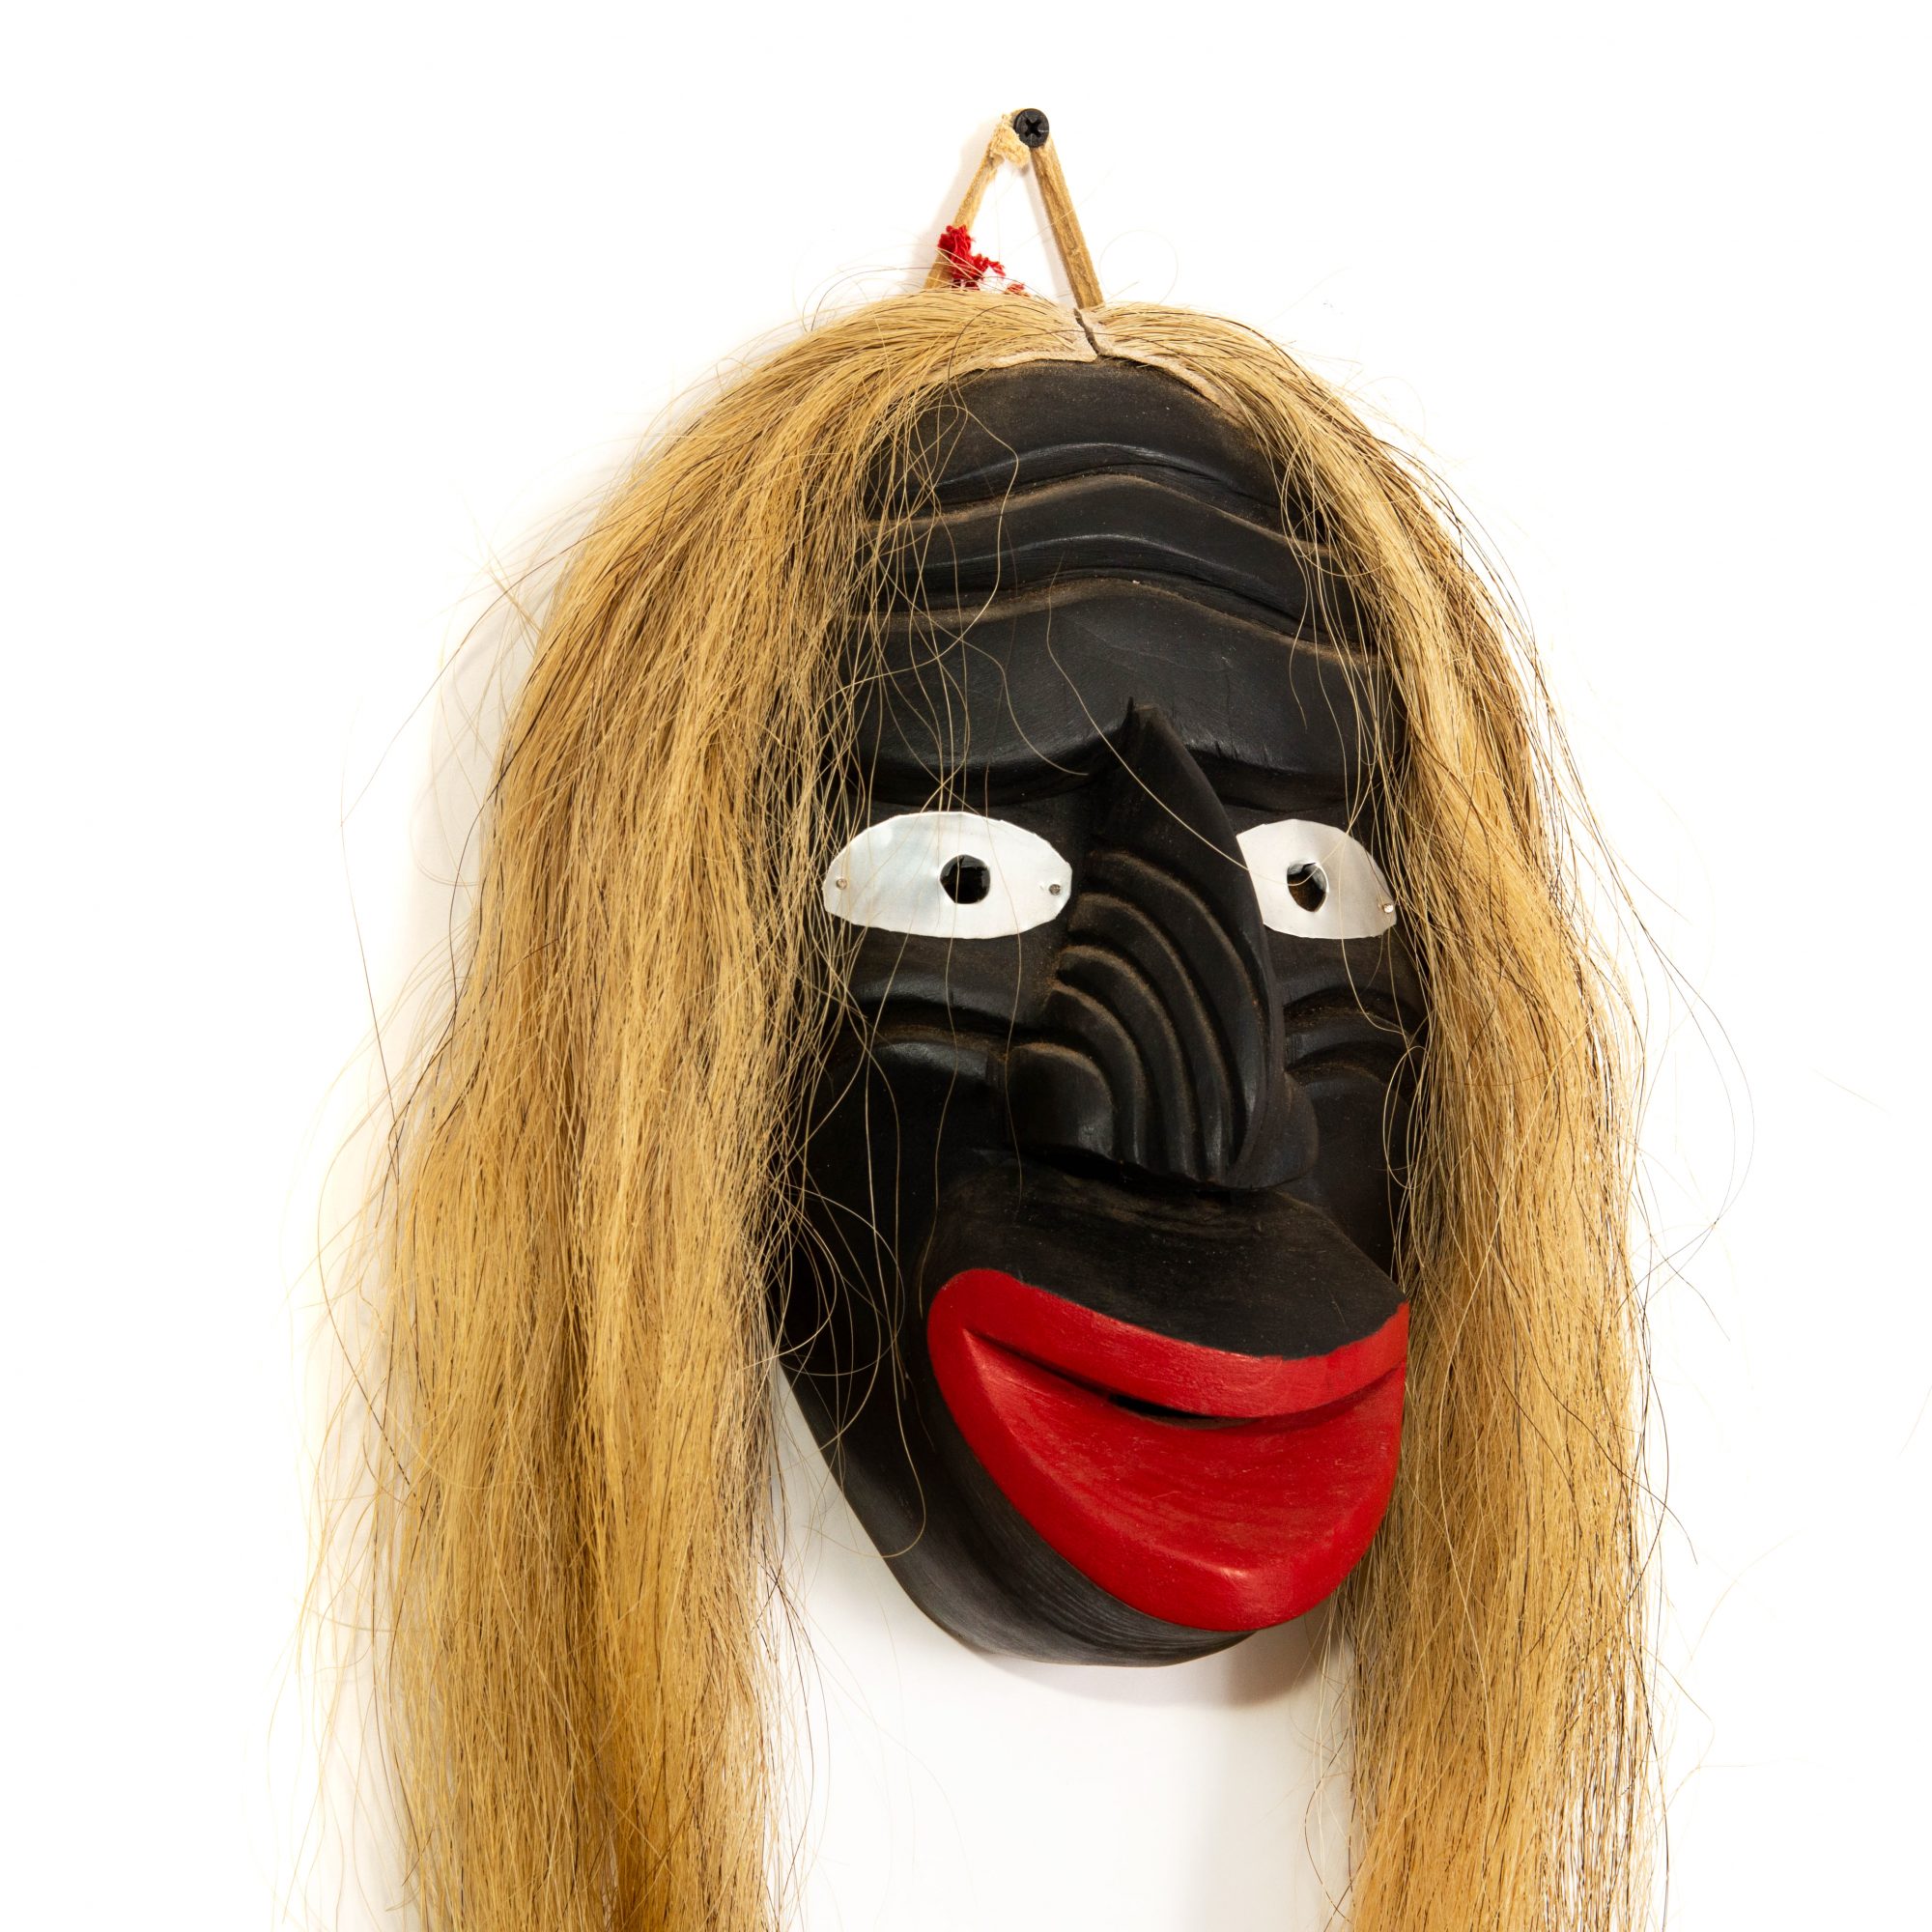 David Farin Tribal Masks